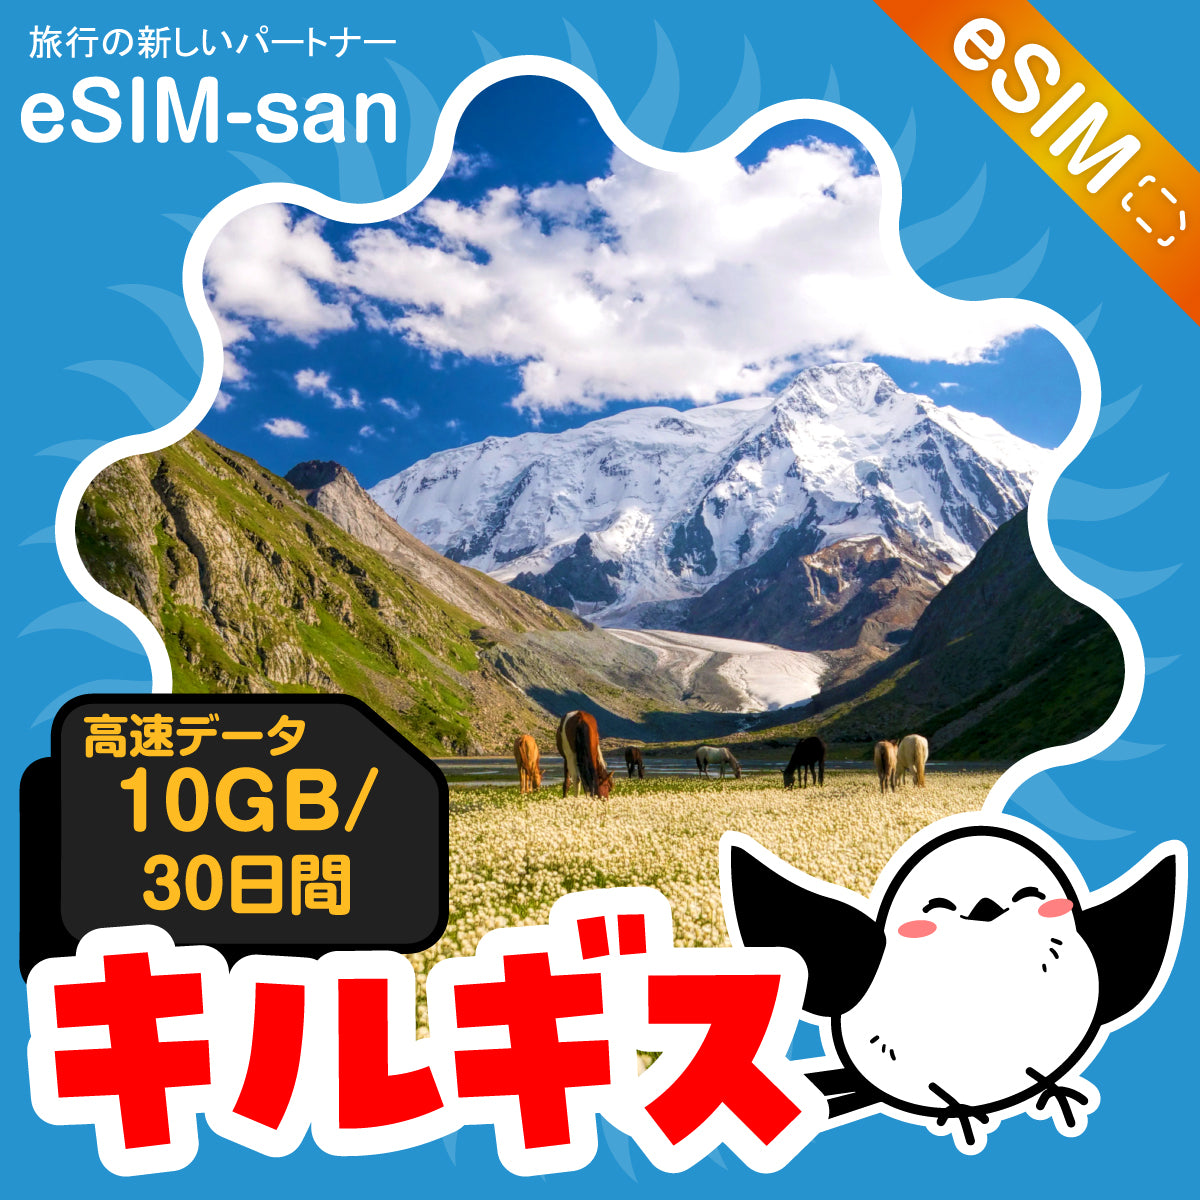 キルギスeSIMの10GBプラン画像_eSIM-san